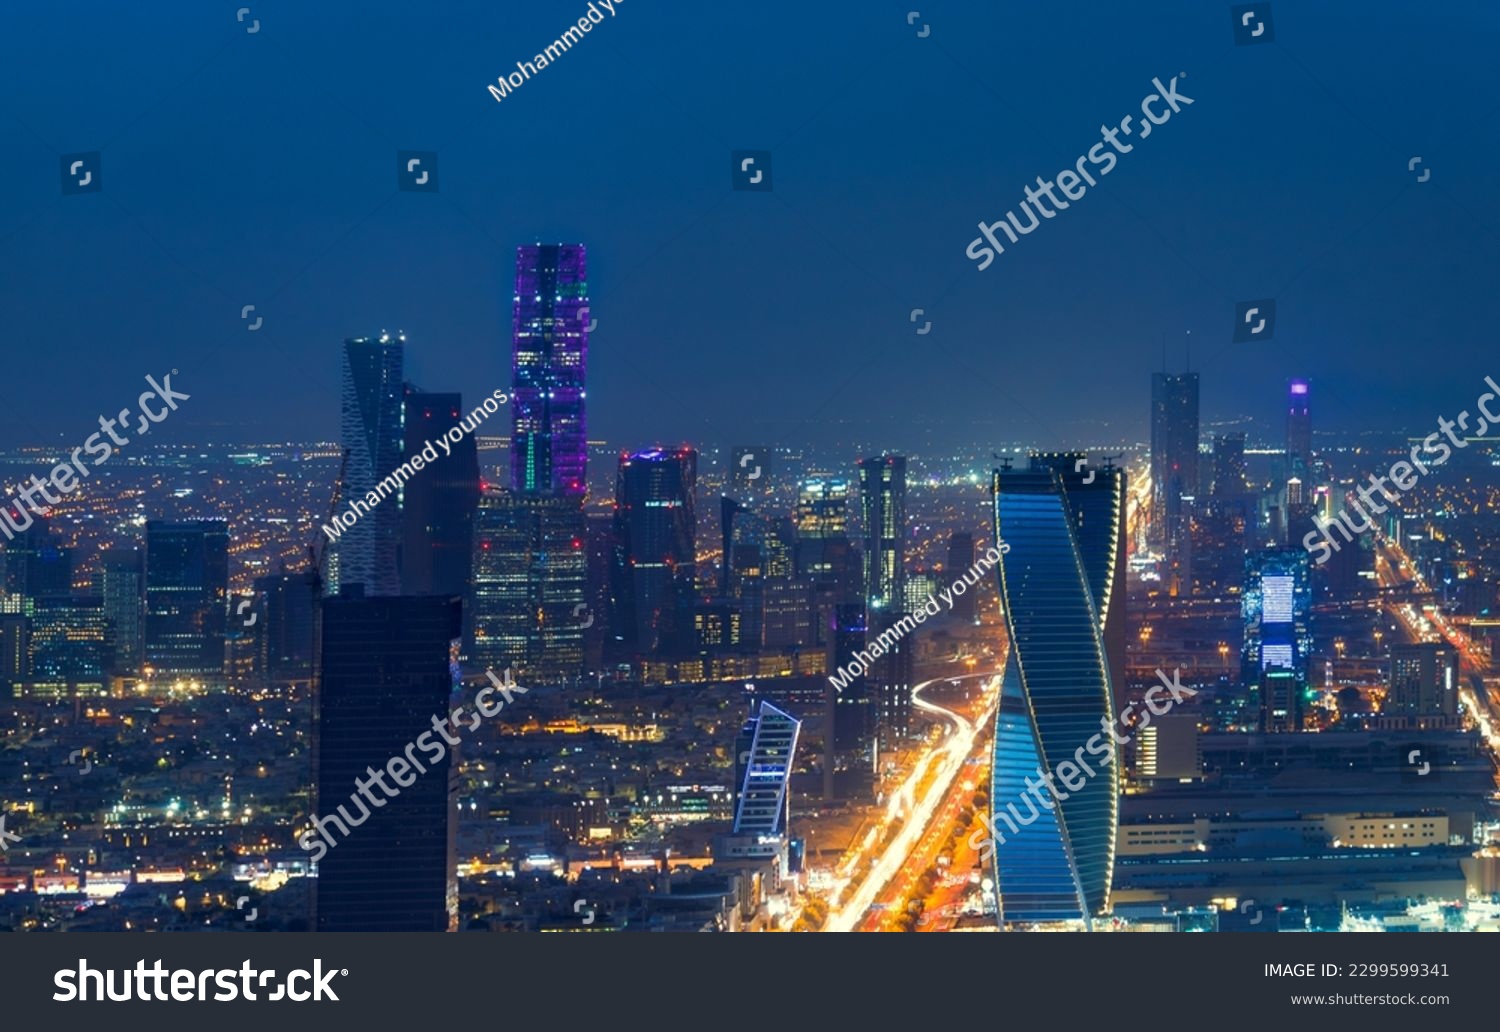 Kingdom of Saudi Arabia with a night view - Kingdom Tower - Riyadh skyline - Riyadh at night #2299599341